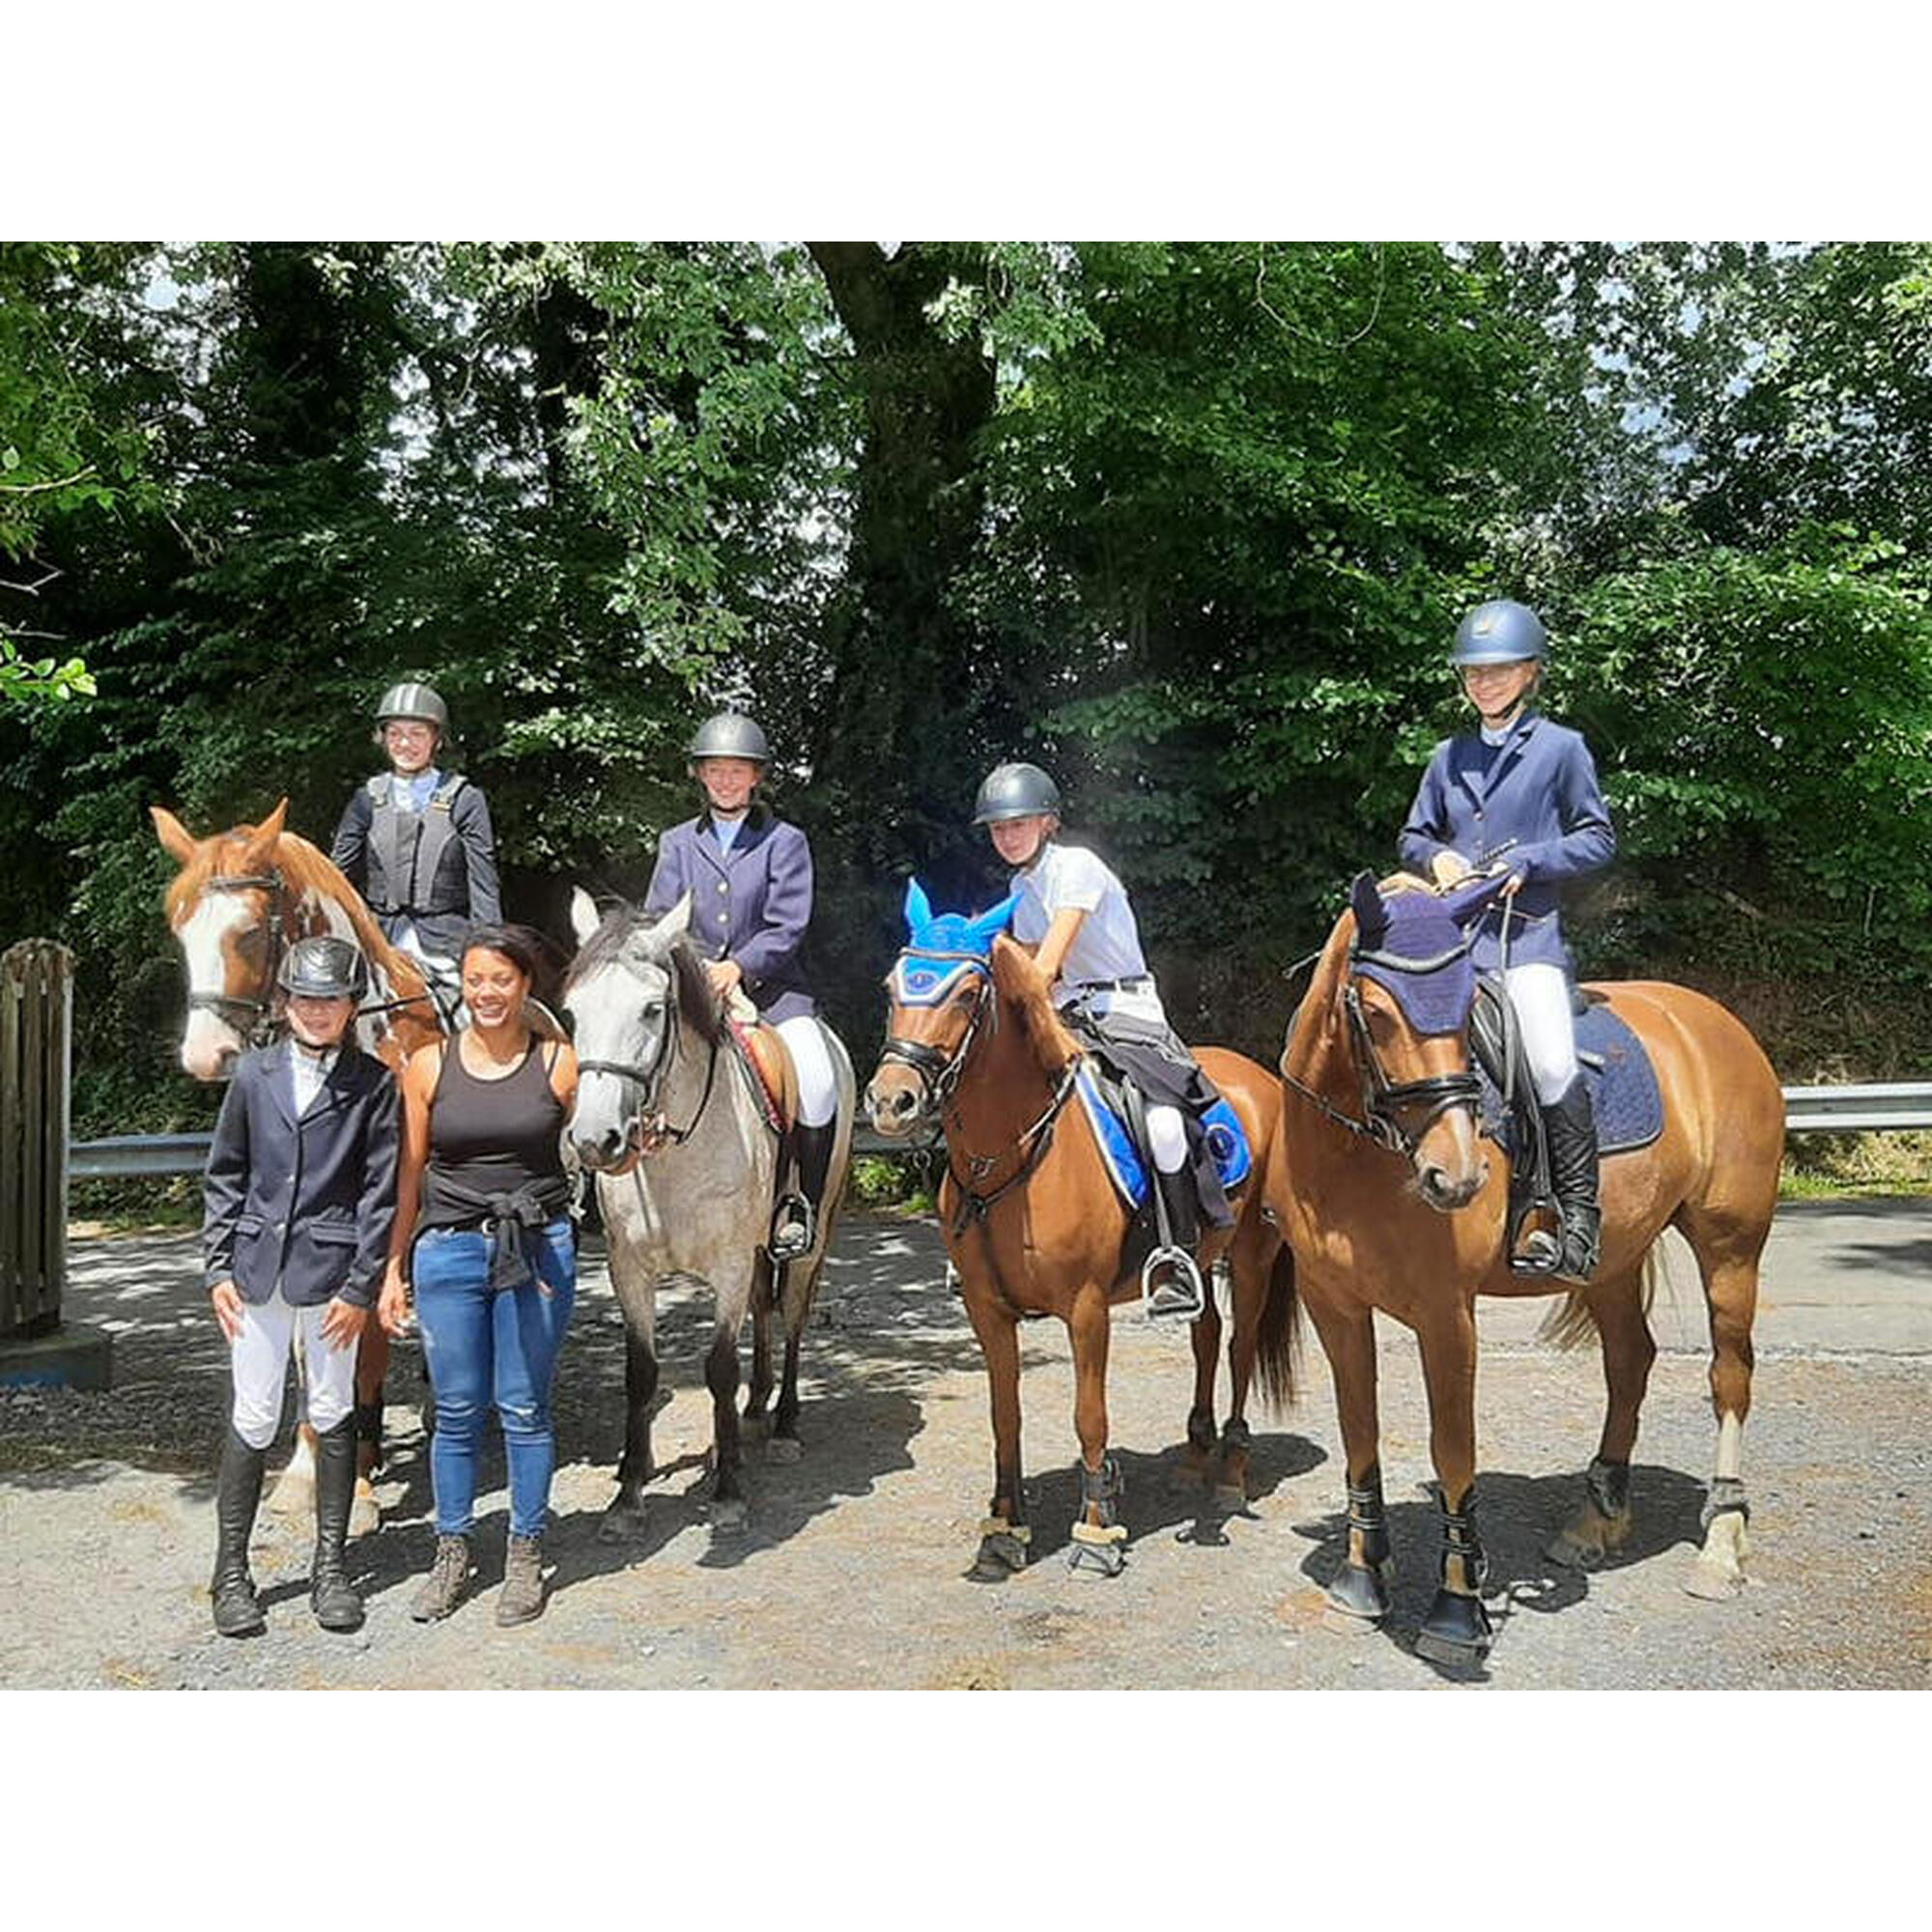 90 minuten durende paardrijtocht in de Ardennen voor 1 persoon